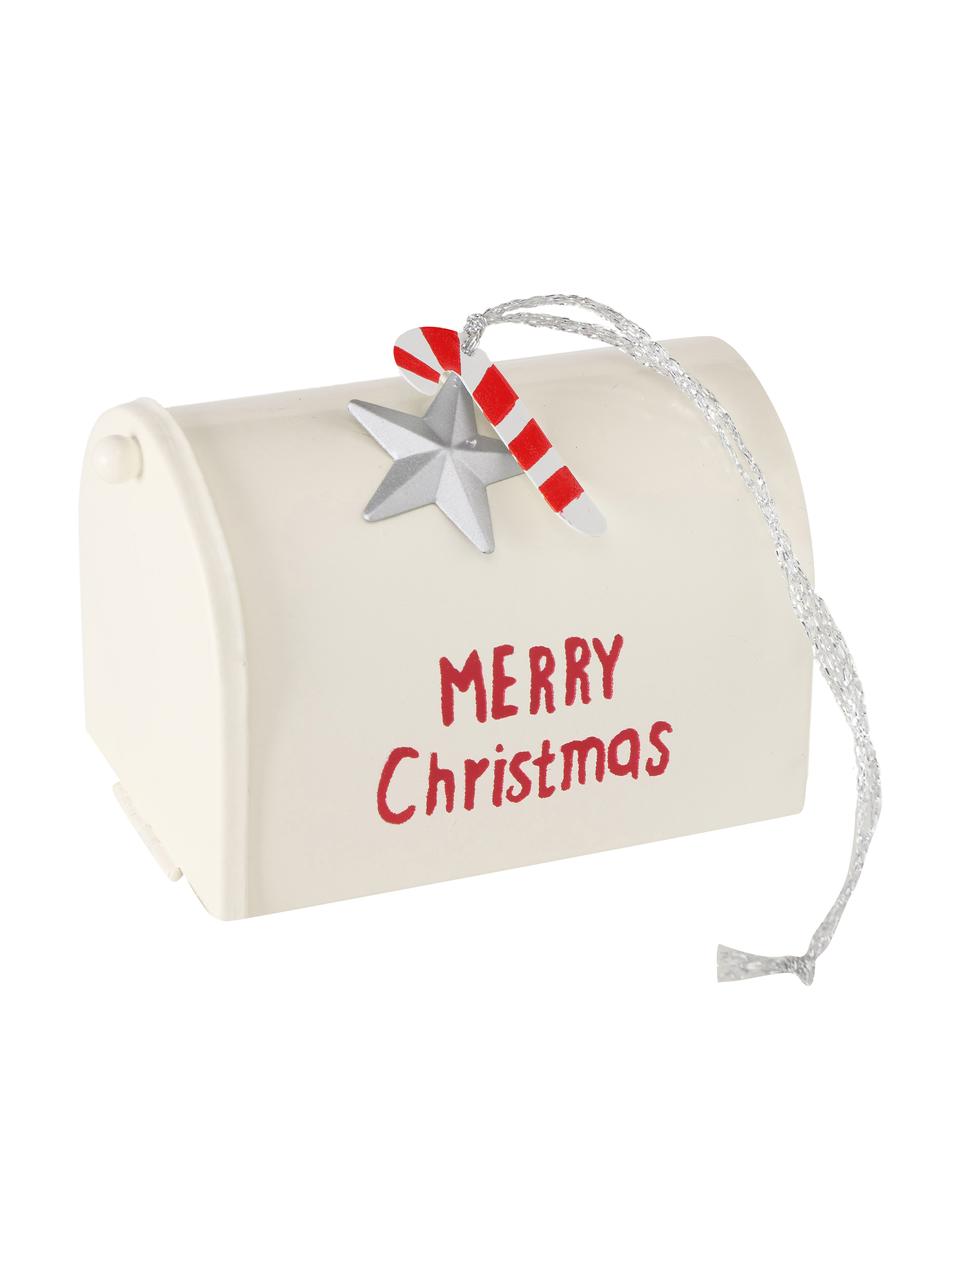 Décorations de sapin de Noël Santa's Mailbox, 4 élém., Métal, laqué, polyester, Rouge, blanc, argenté, larg. 9 x haut. 7 cm